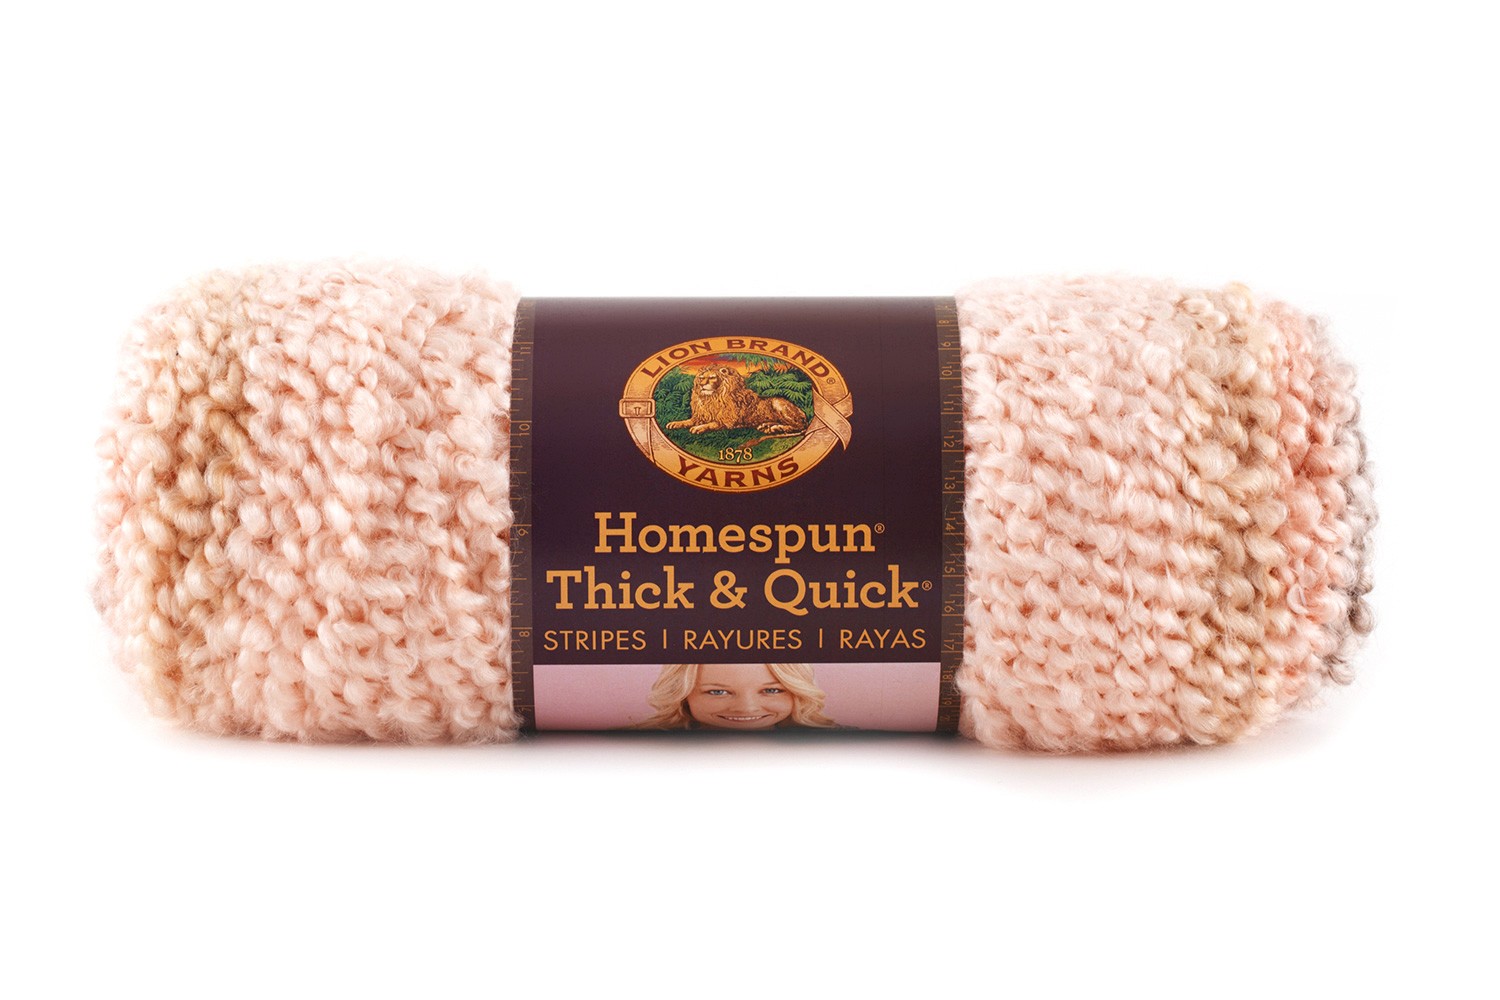 Homespun Thick & Quick Yarn